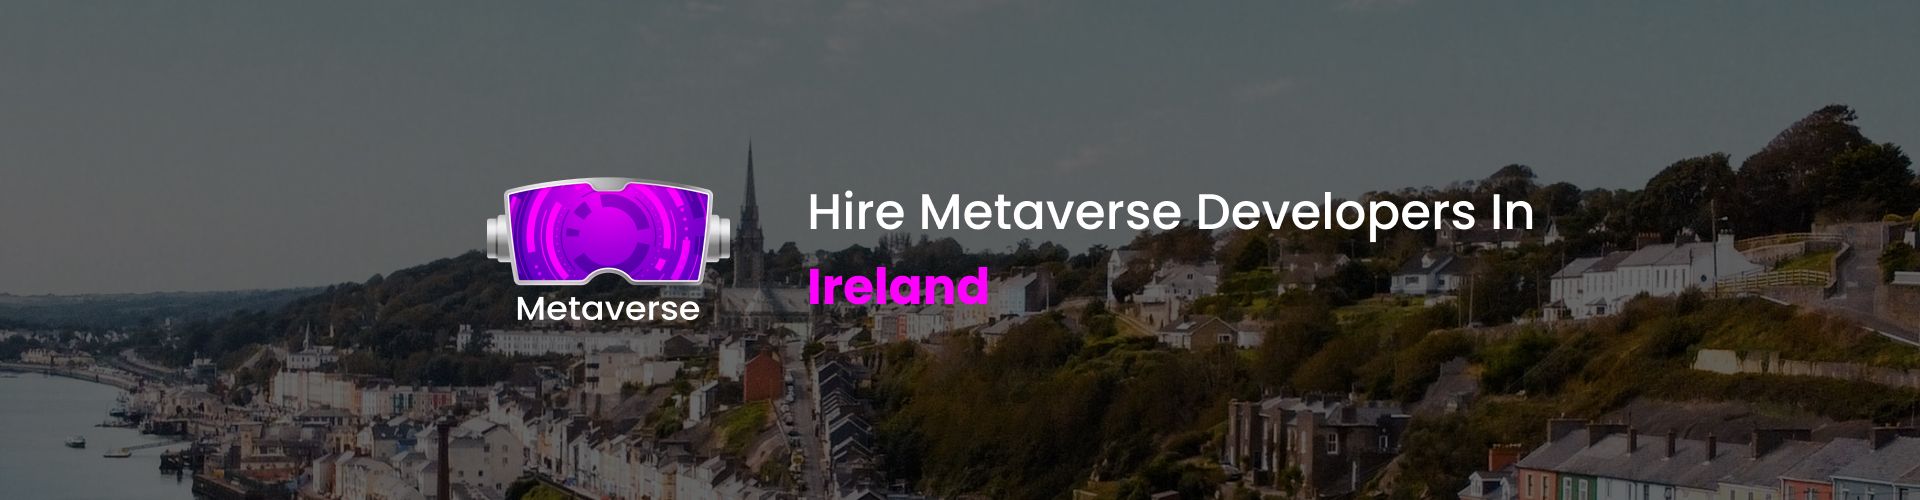 metaverse developers in ireland